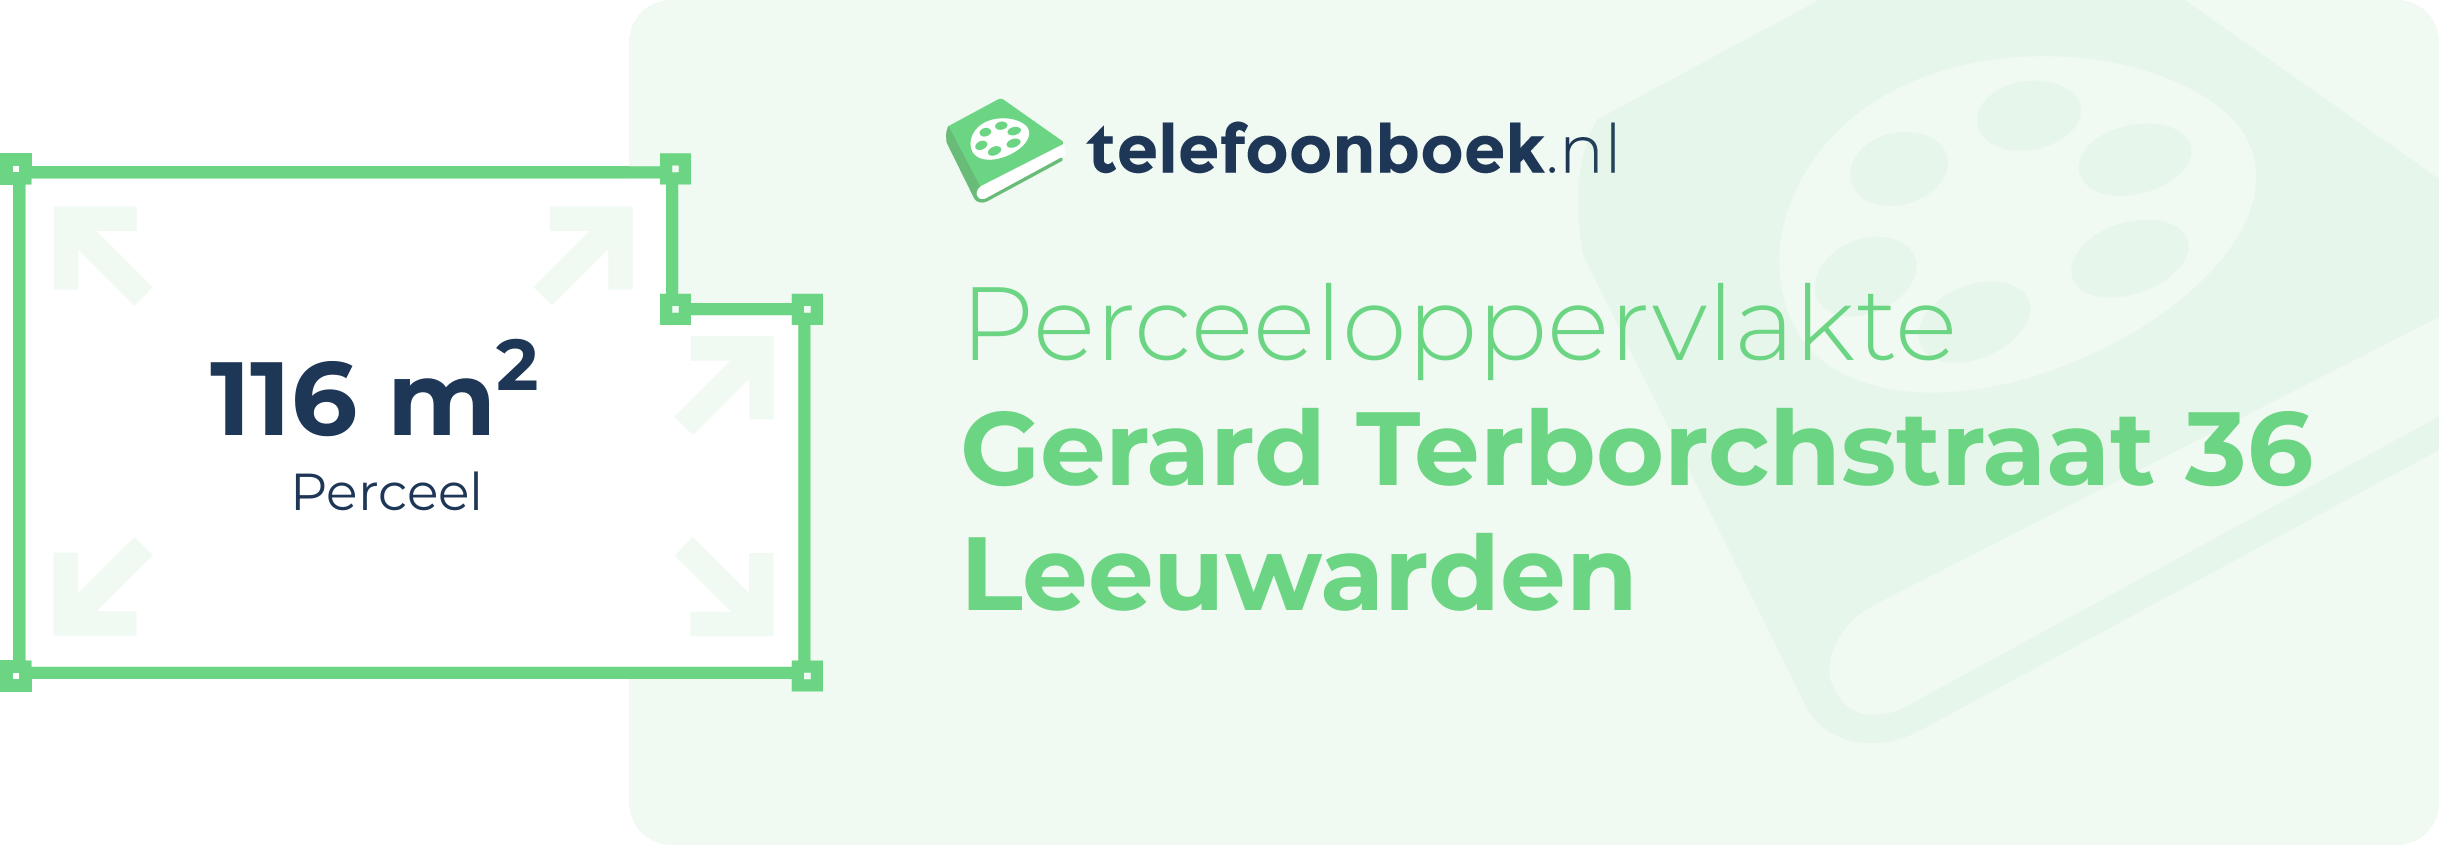 Perceeloppervlakte Gerard Terborchstraat 36 Leeuwarden